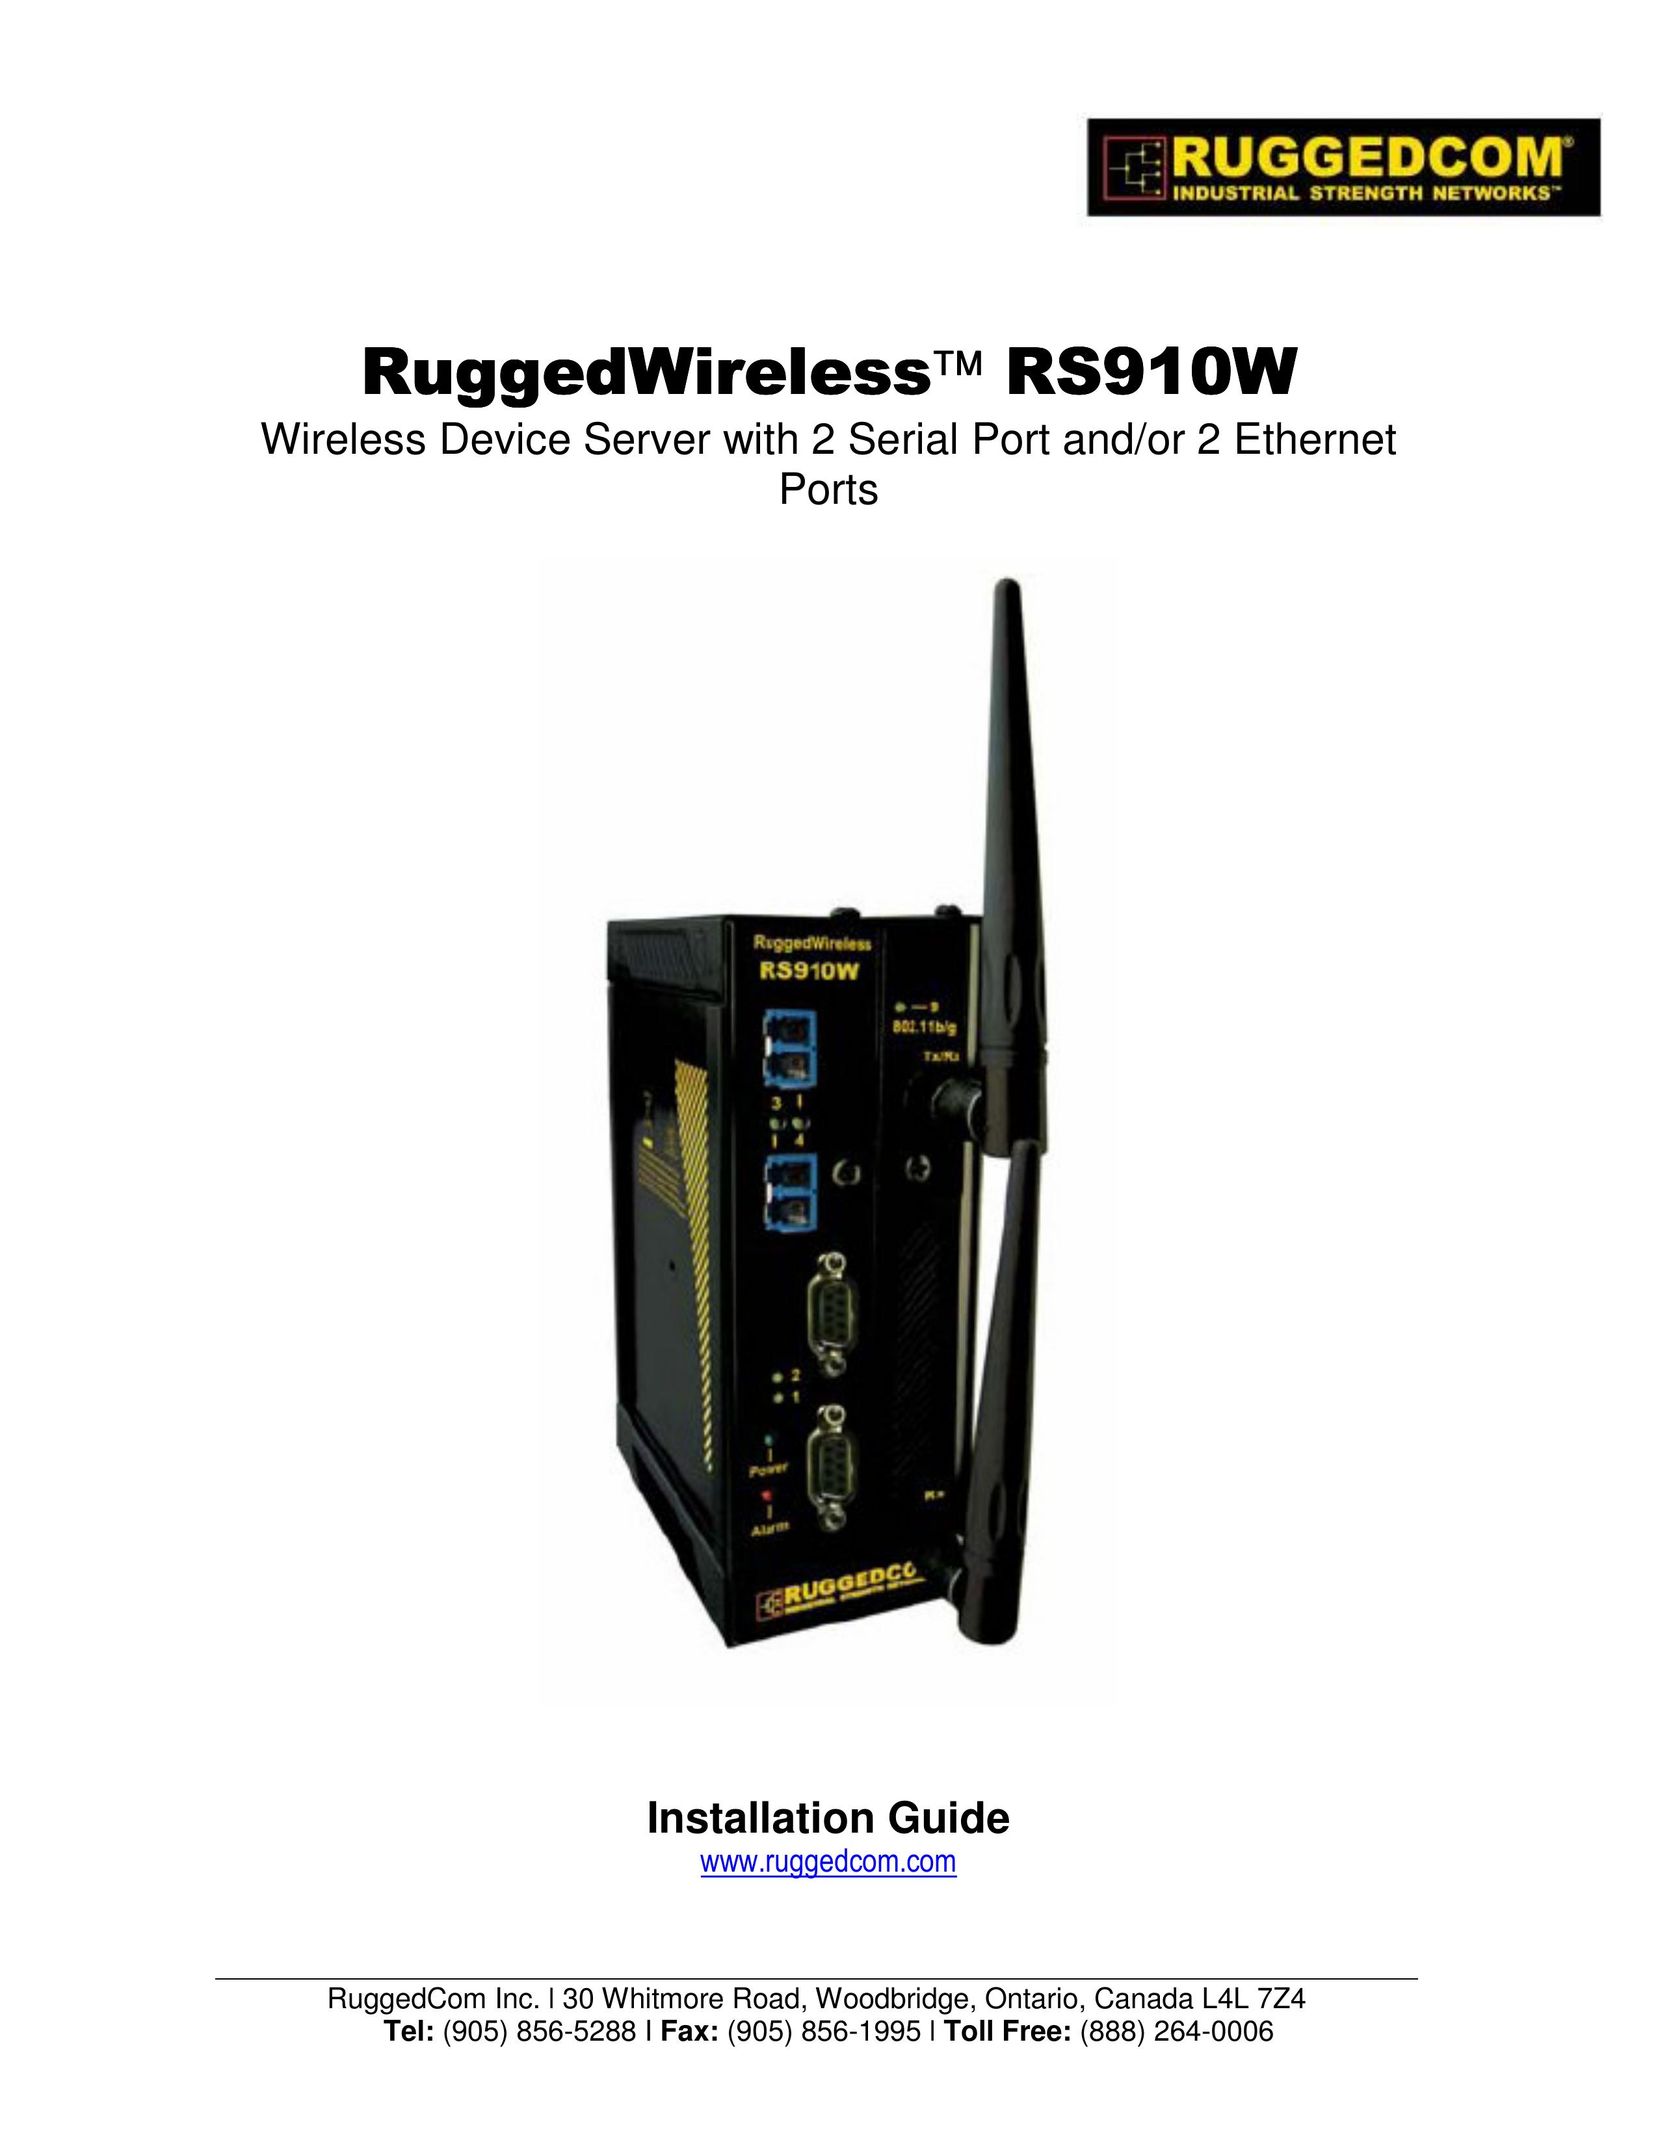 RuggedCom RS910W Server User Manual